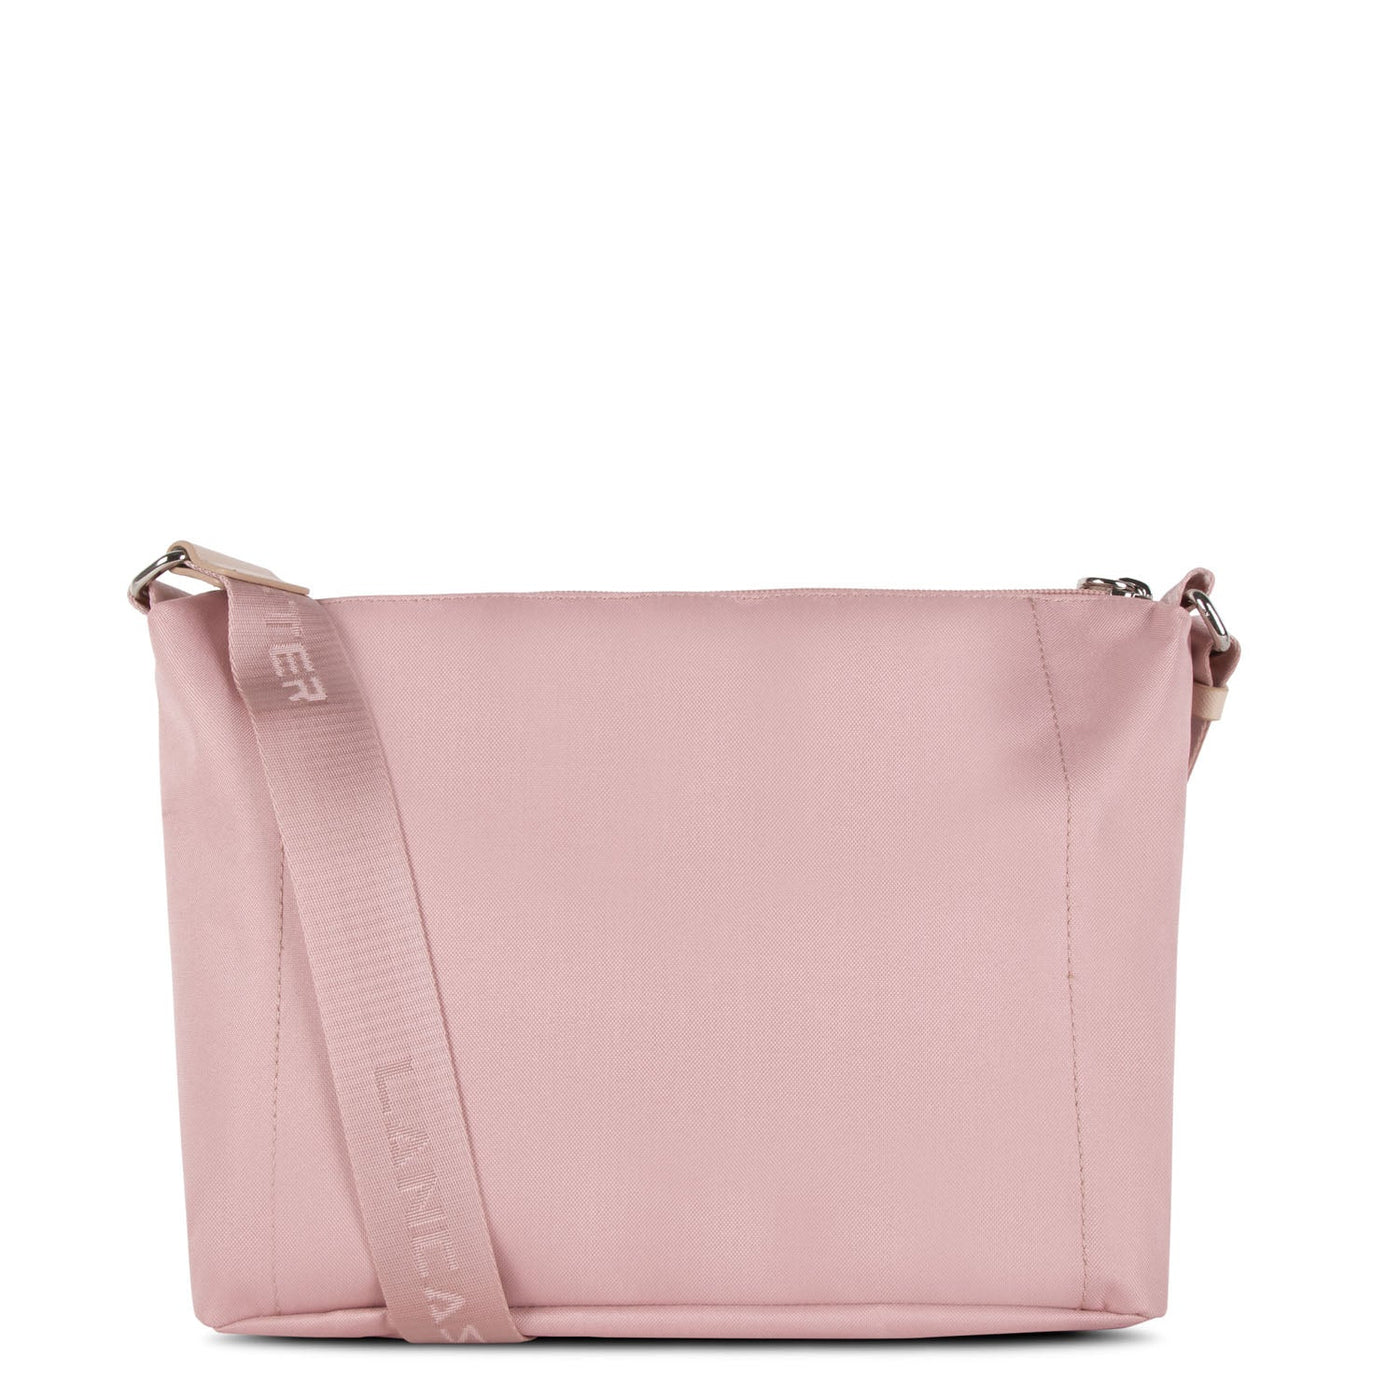 shoulder bag - smart kba #couleur_poudre